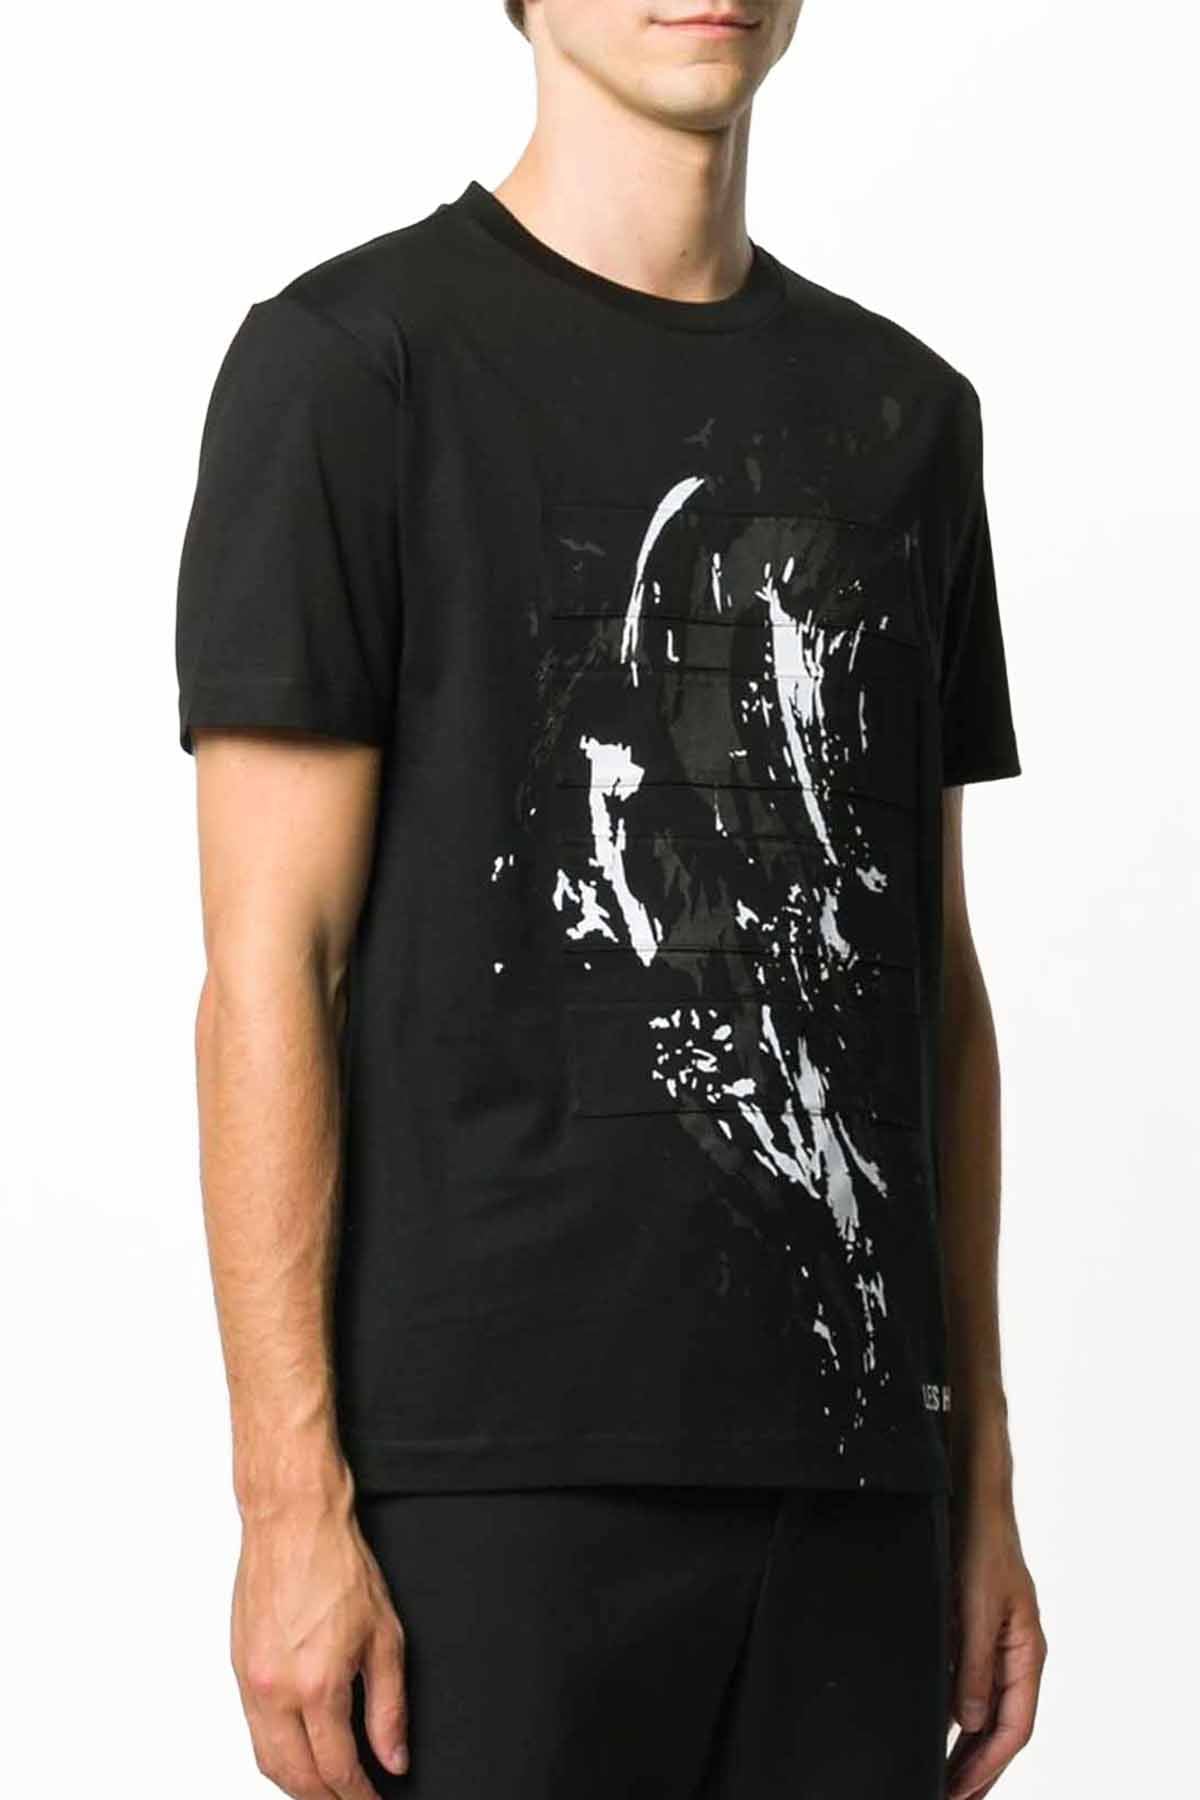 Les Hommes Boya Efektli T-shirt-Libas Trendy Fashion Store